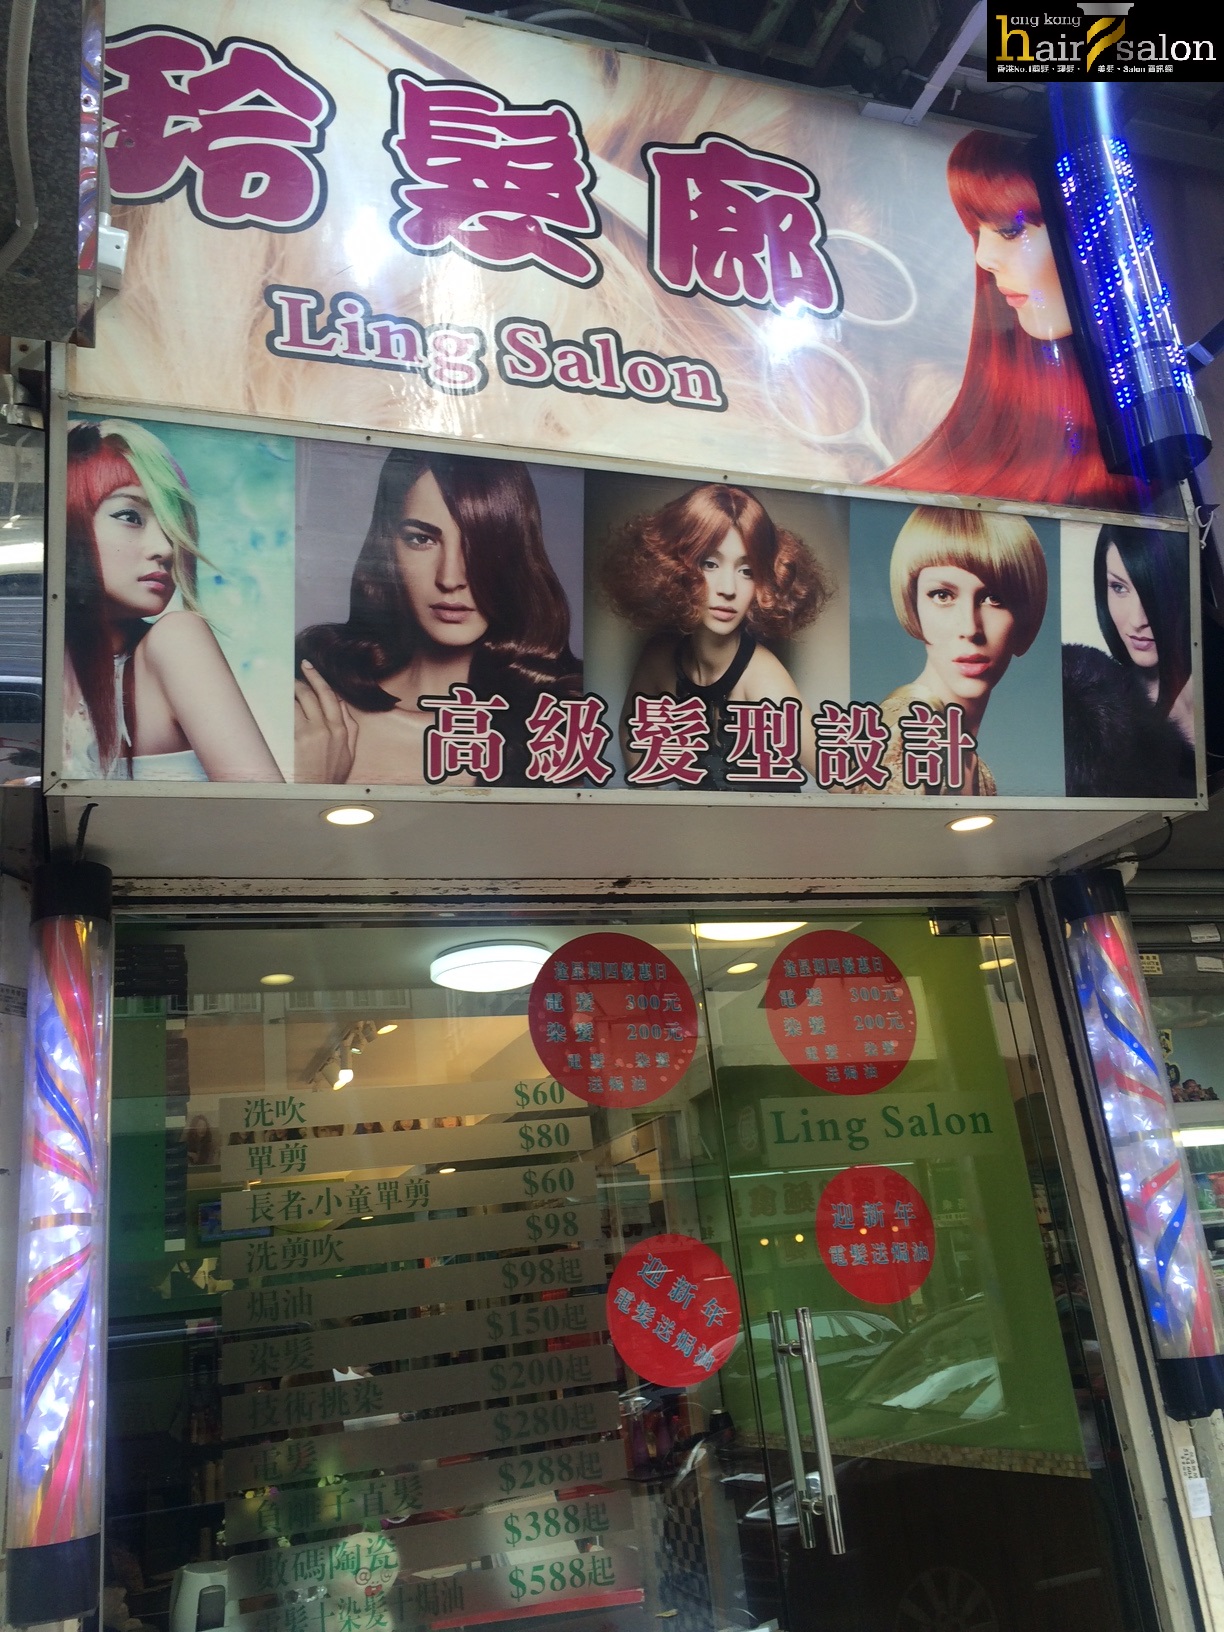 髮型屋: 玲髮廊 Ling Salon